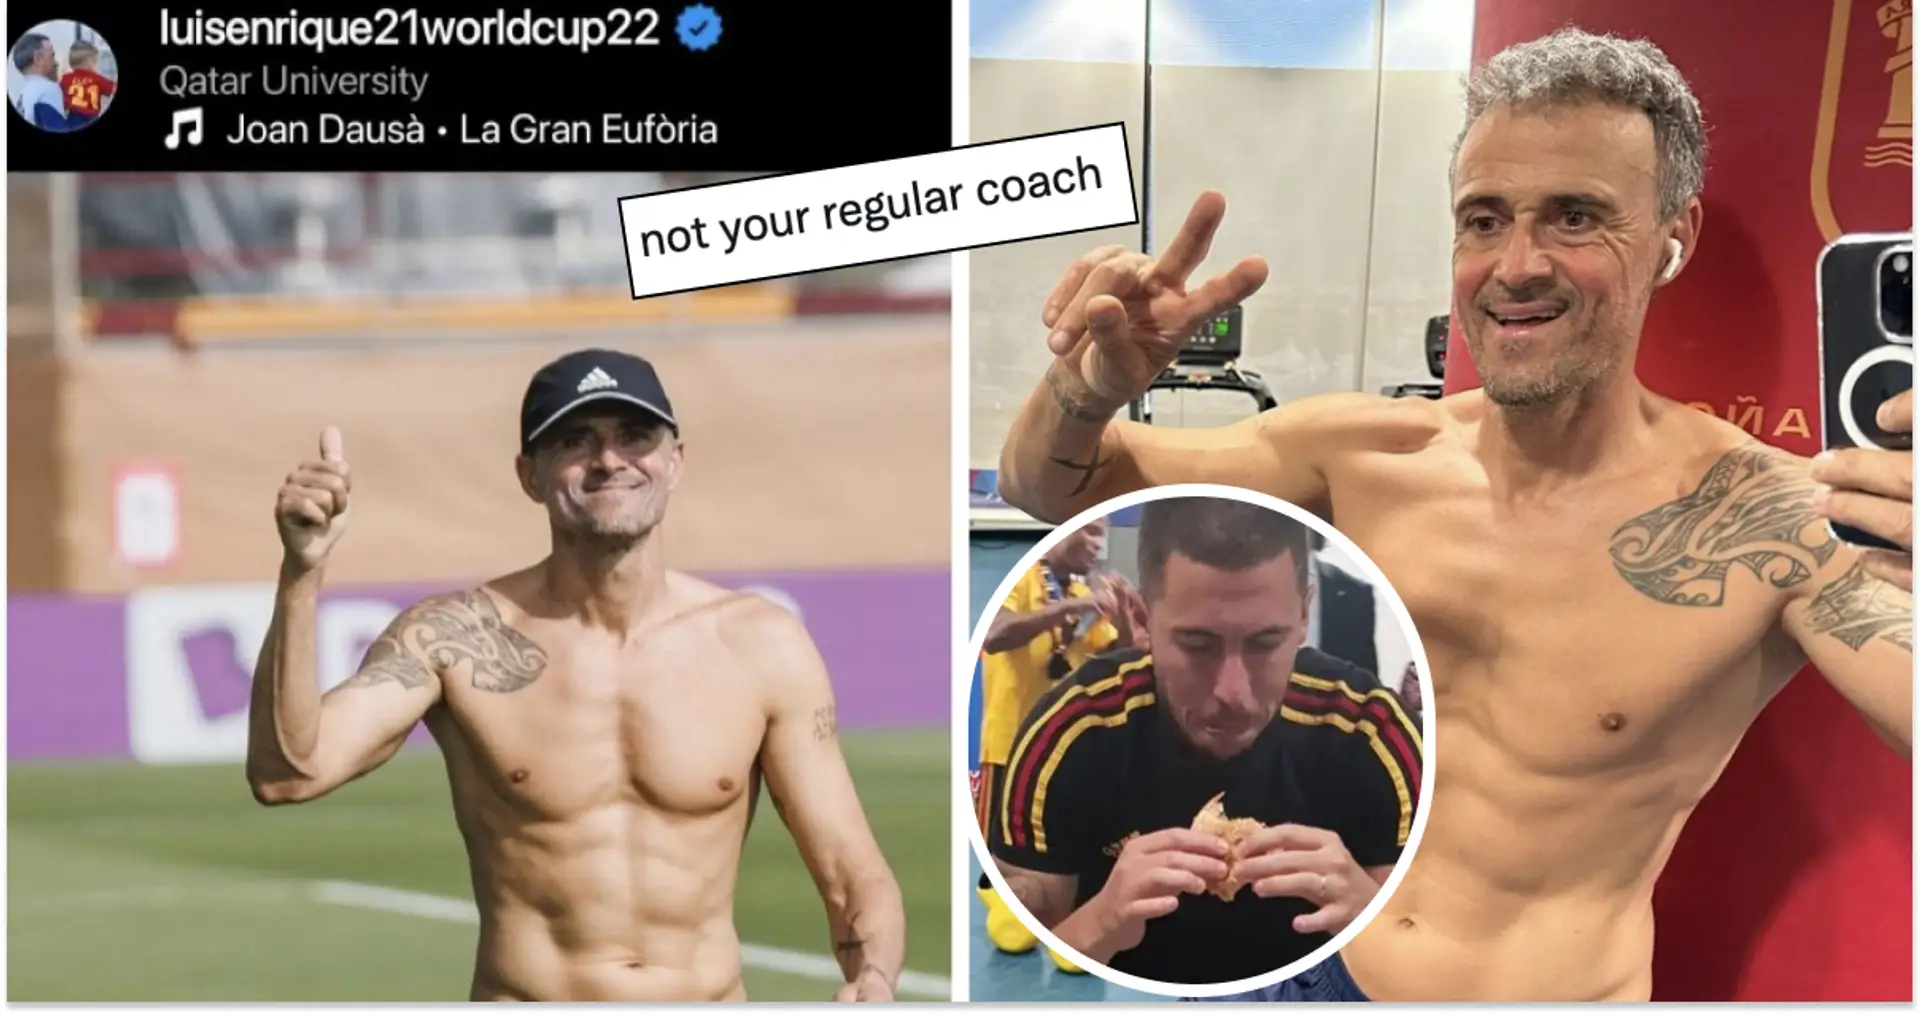 'Better shape than Hazard': fans react as Luis Enrique flexes muscles on Instagram